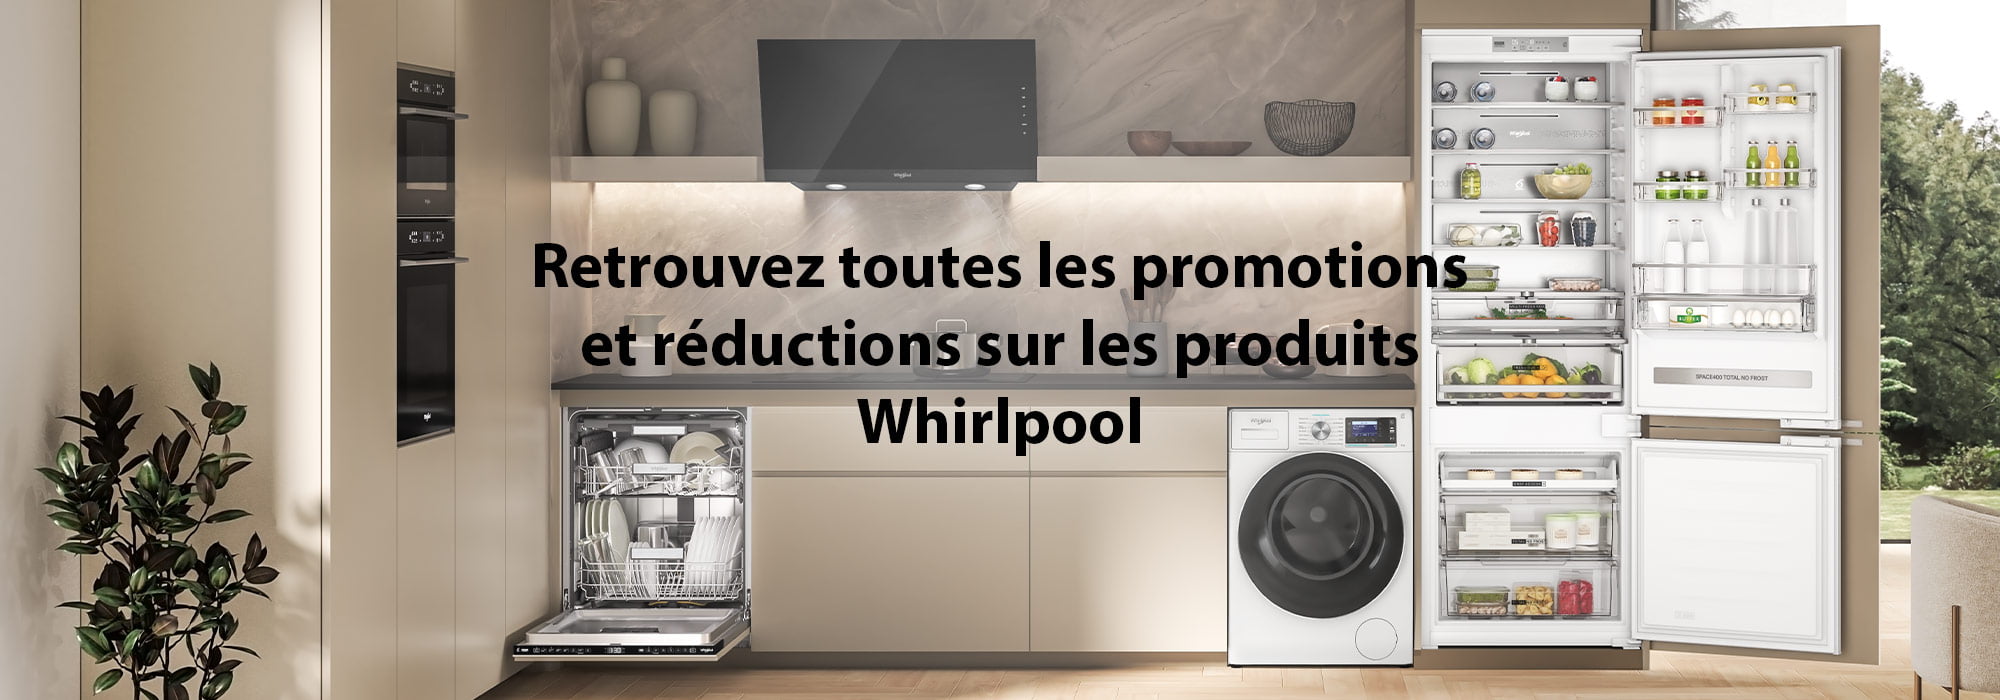 Retrouvez toutes les promotions et réductions sur les produits Whirlpool